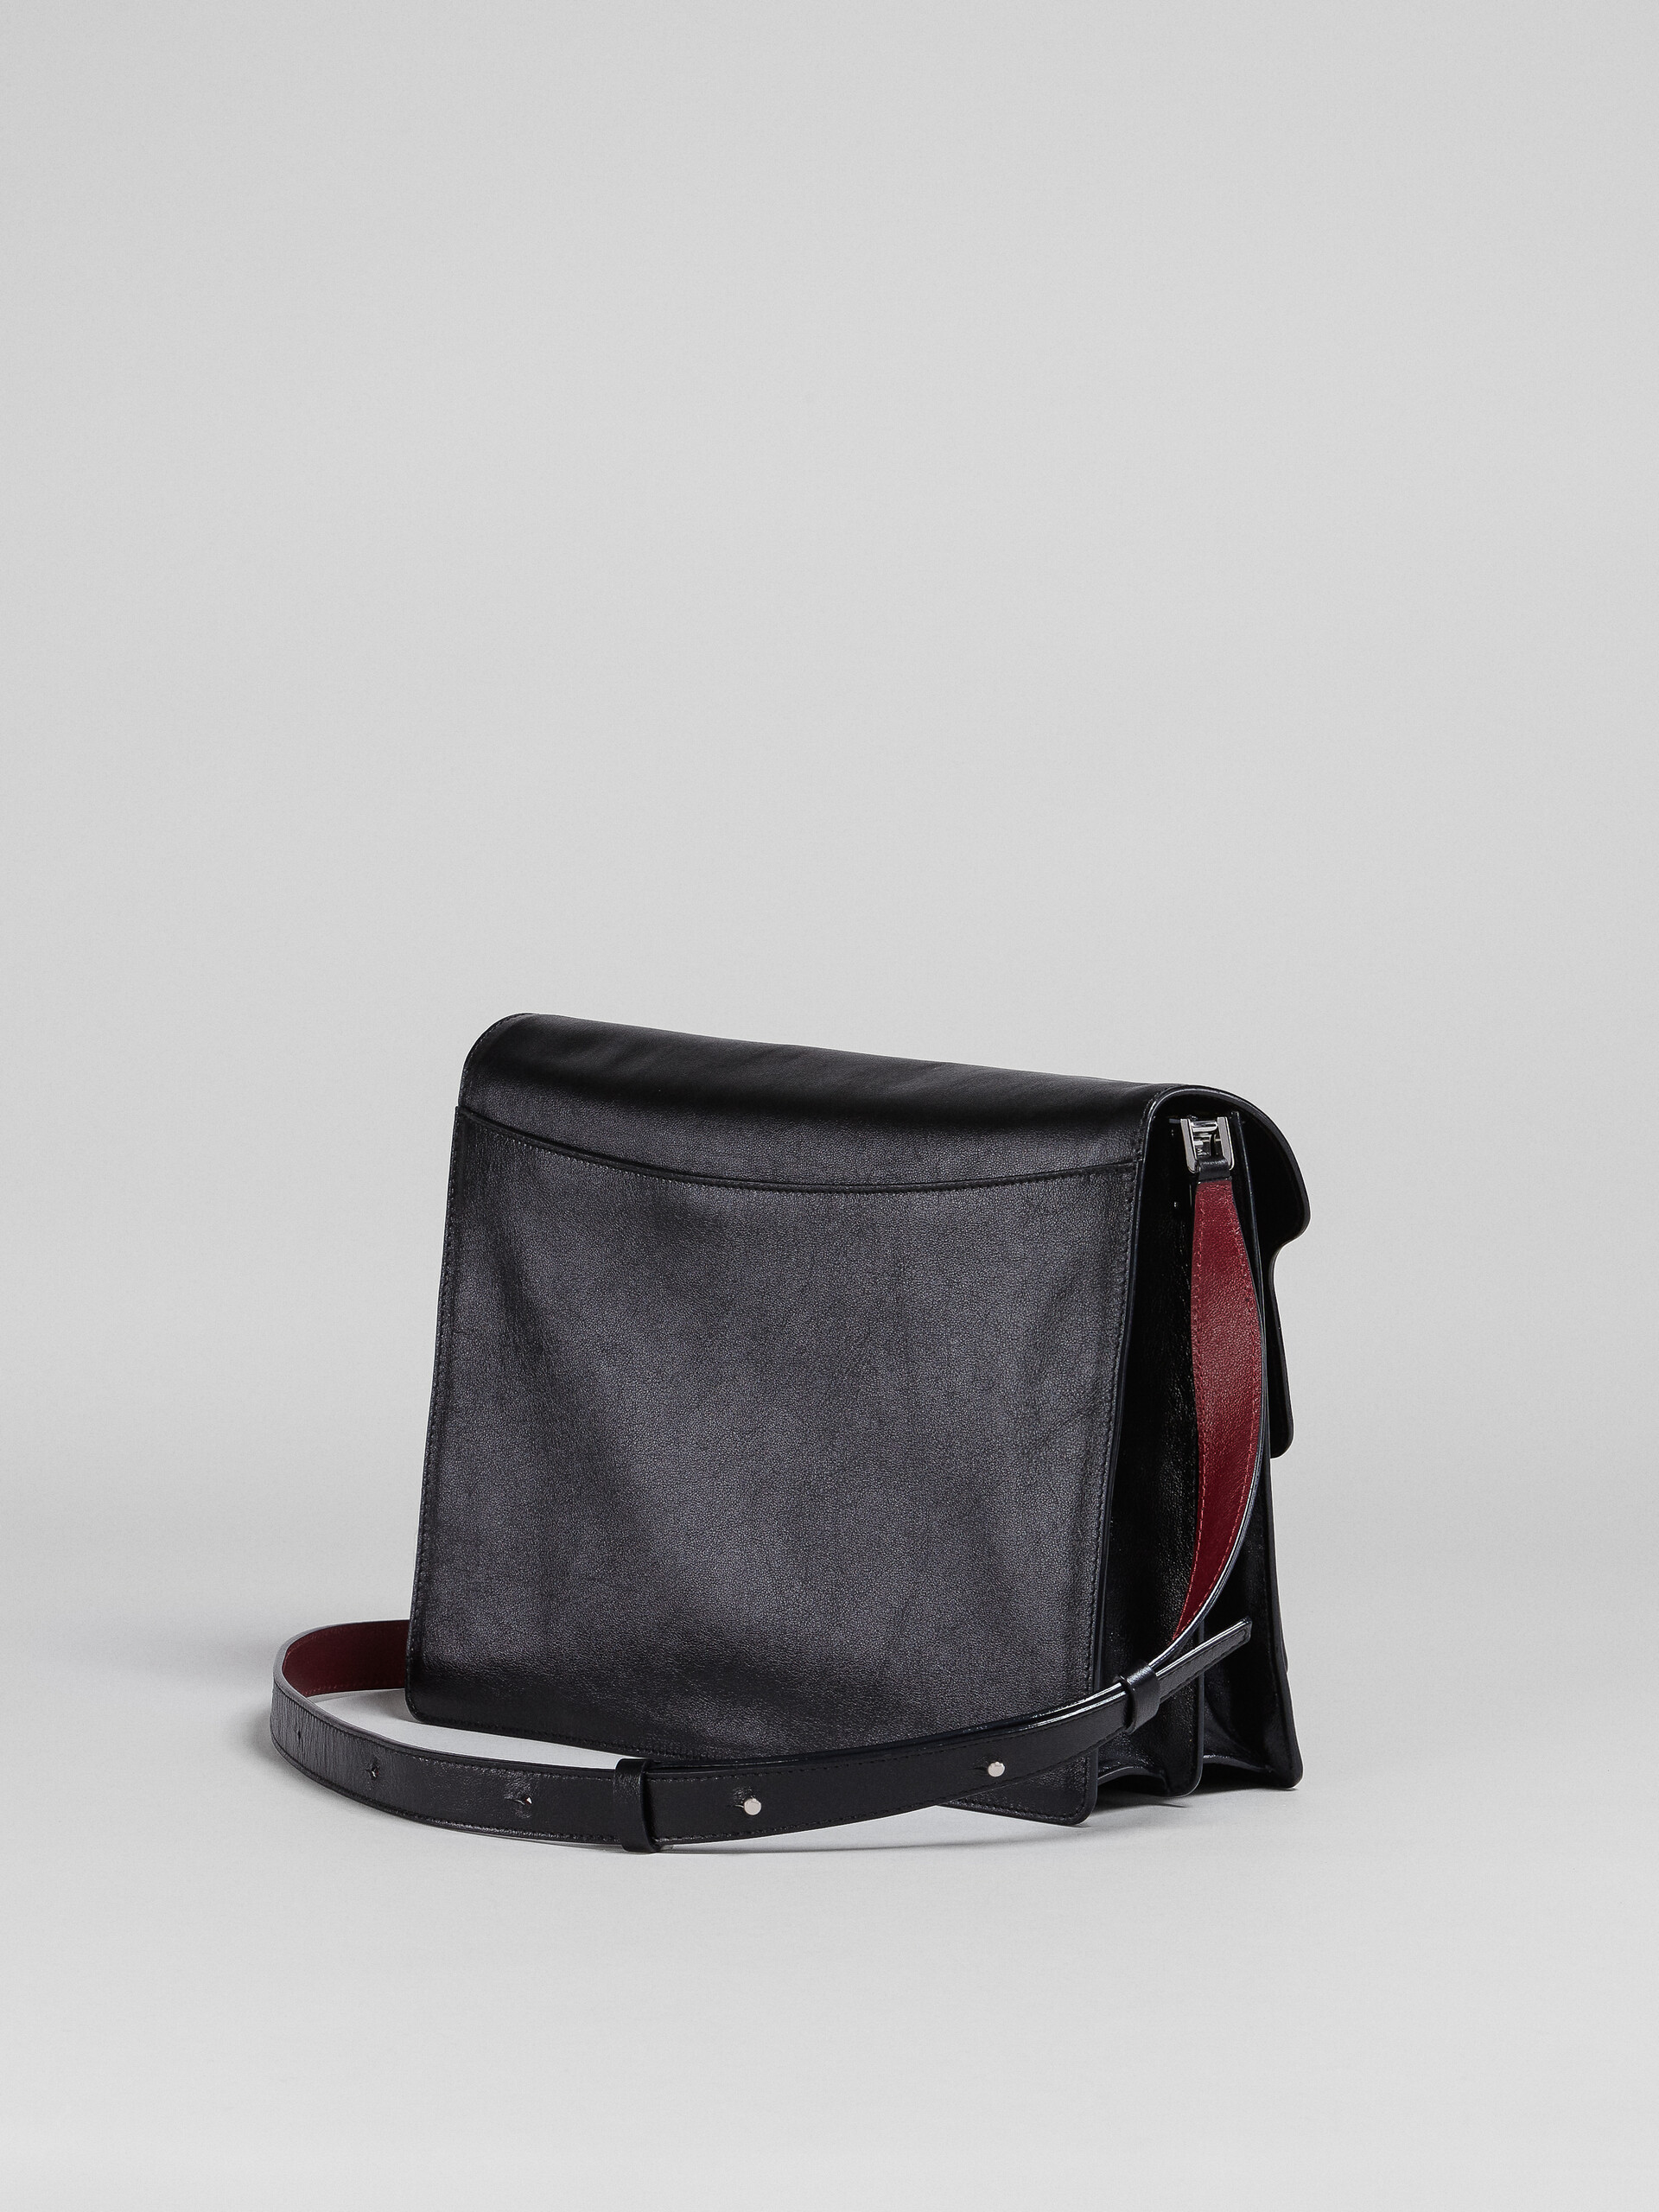 Calf leather TRUNK SOFT bag - Shoulder Bag - Image 3